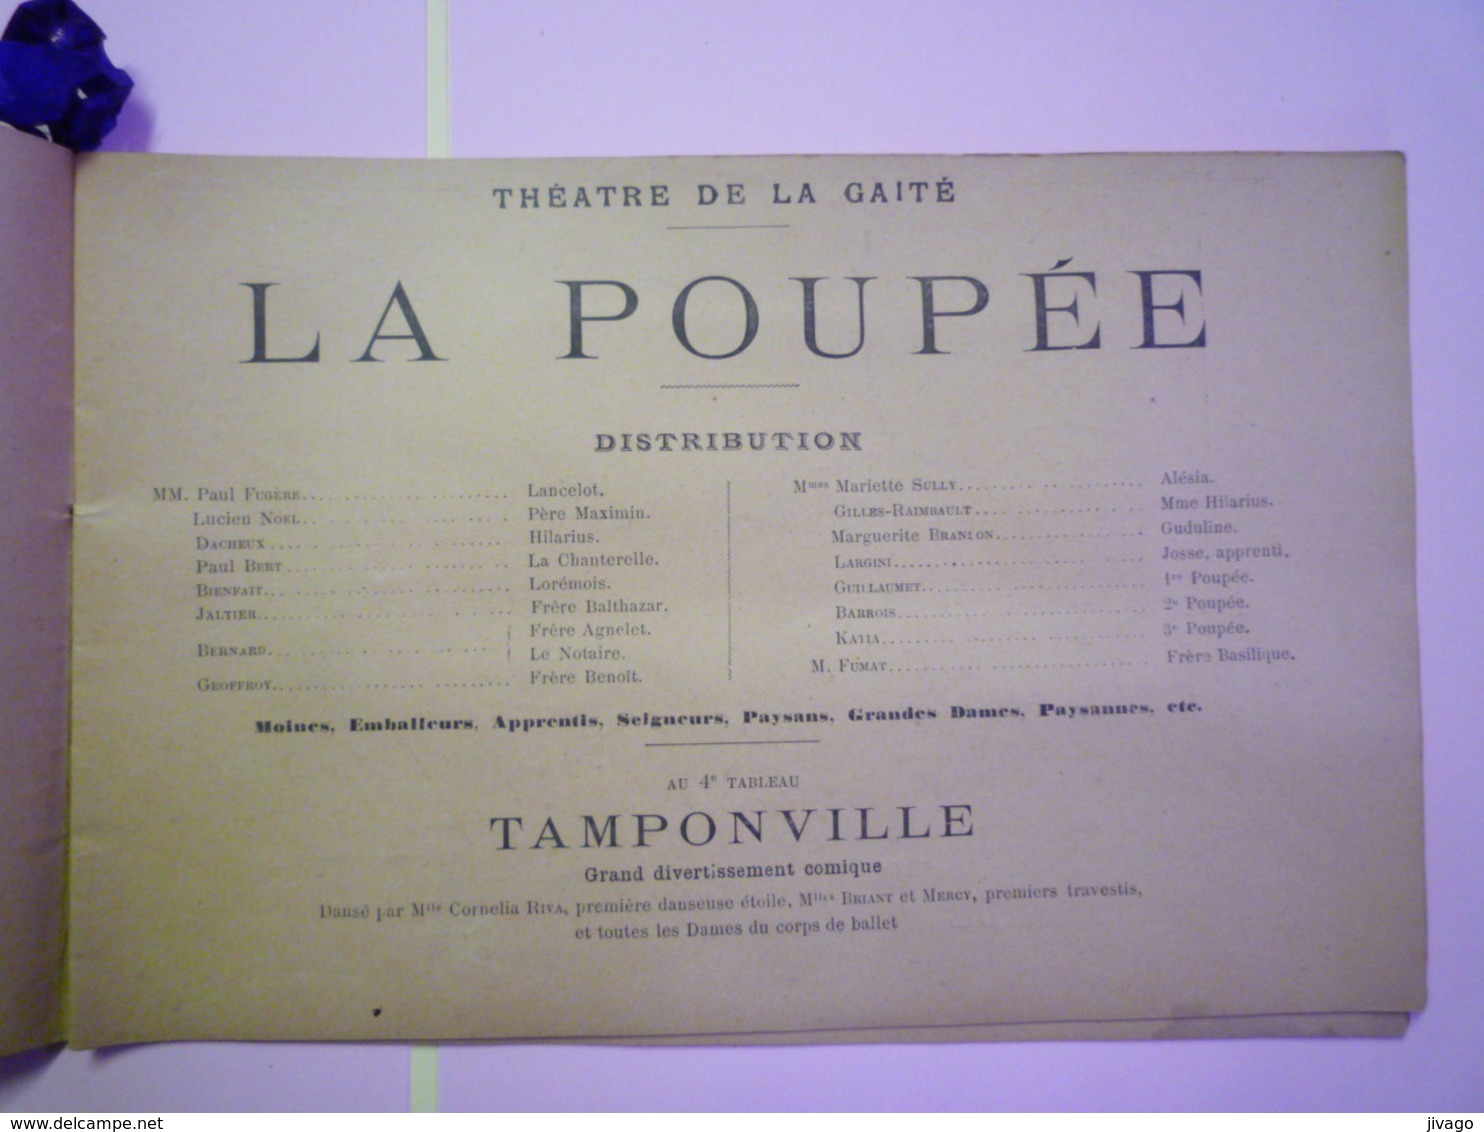 2019 - 1647  JOLI  PROGRAMME du Théâtre de la Gaité  1896-1897  (28 pages)   